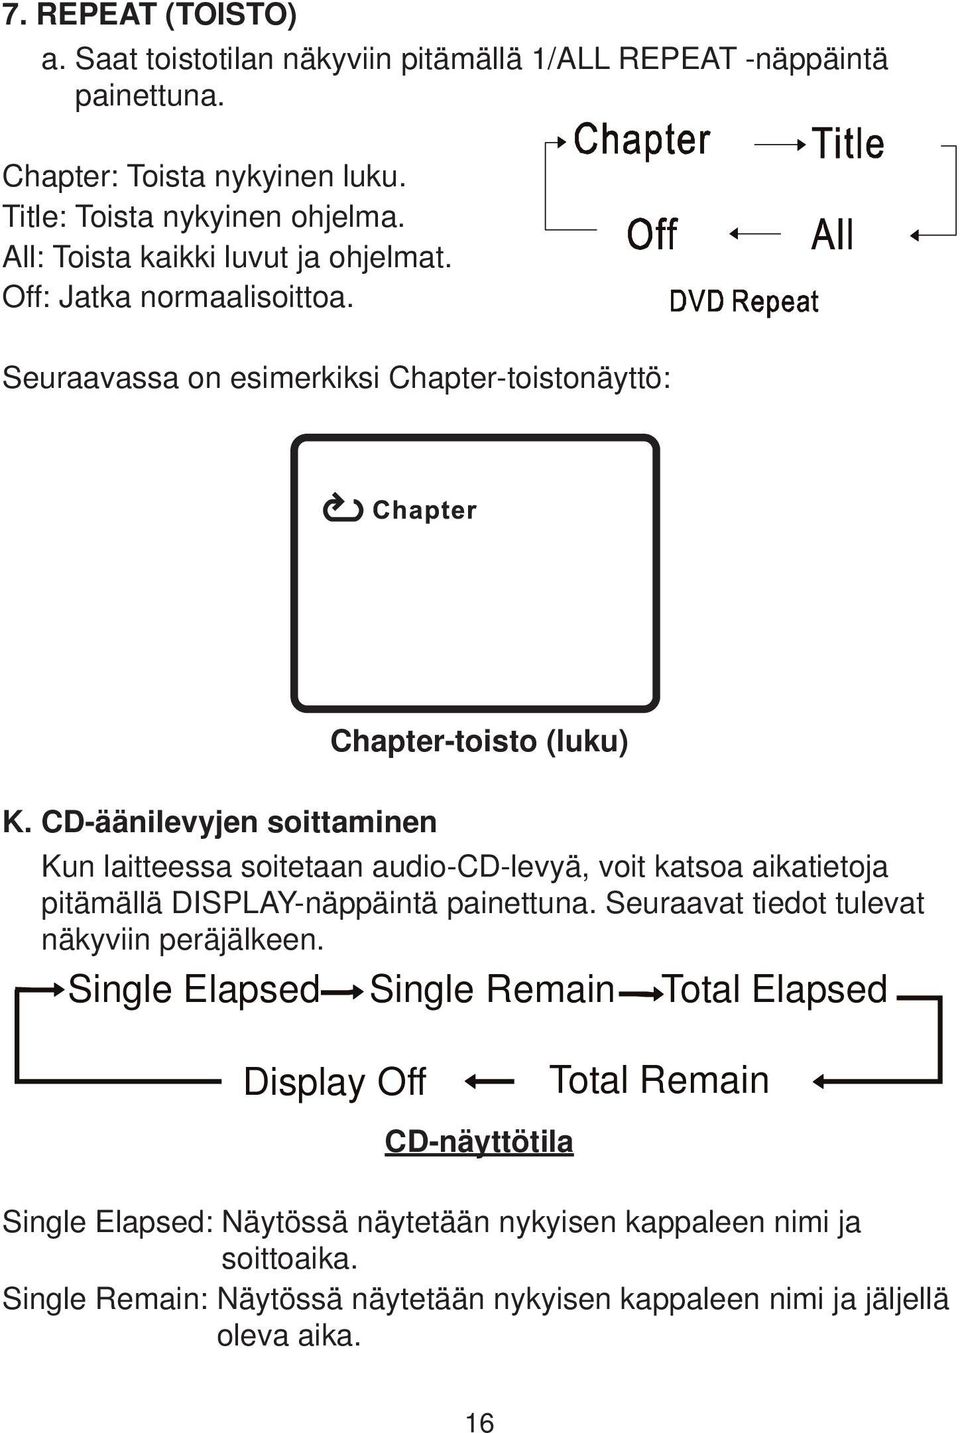 CD-äänilevyjen soittaminen Chapter-toisto (luku) P17 Kun laitteessa soitetaan audio-cd-levyä, voit katsoa aikatietoja pitämällä DISPLAY-näppäintä painettuna.